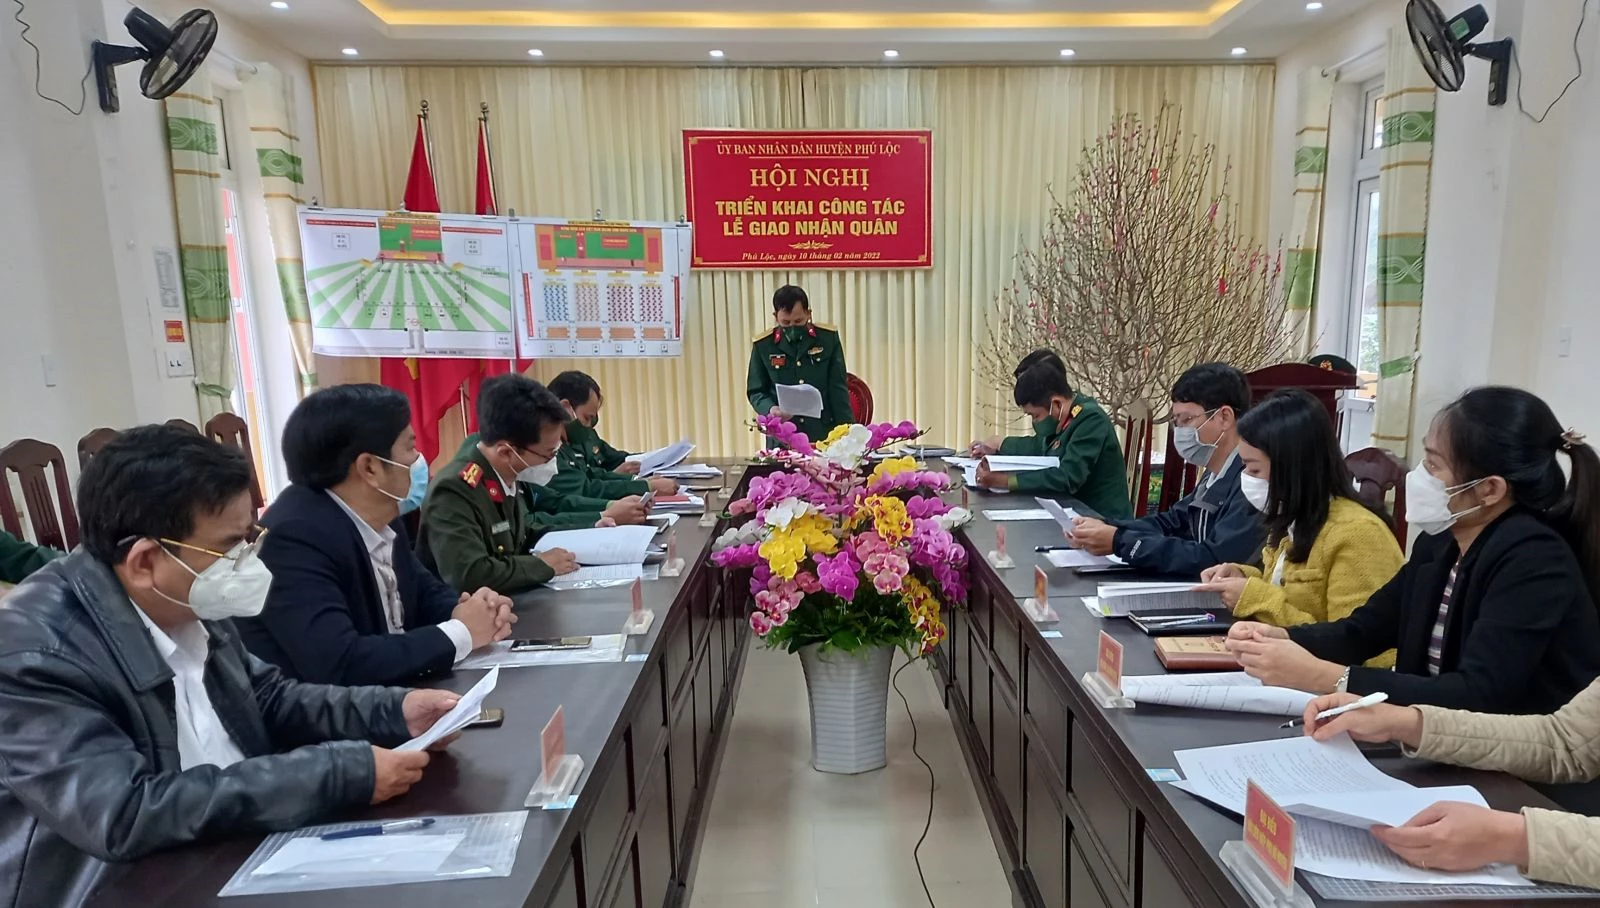 Huyện Phú Lộc triển khai công tác Lễ giao, nhận quân năm 2022